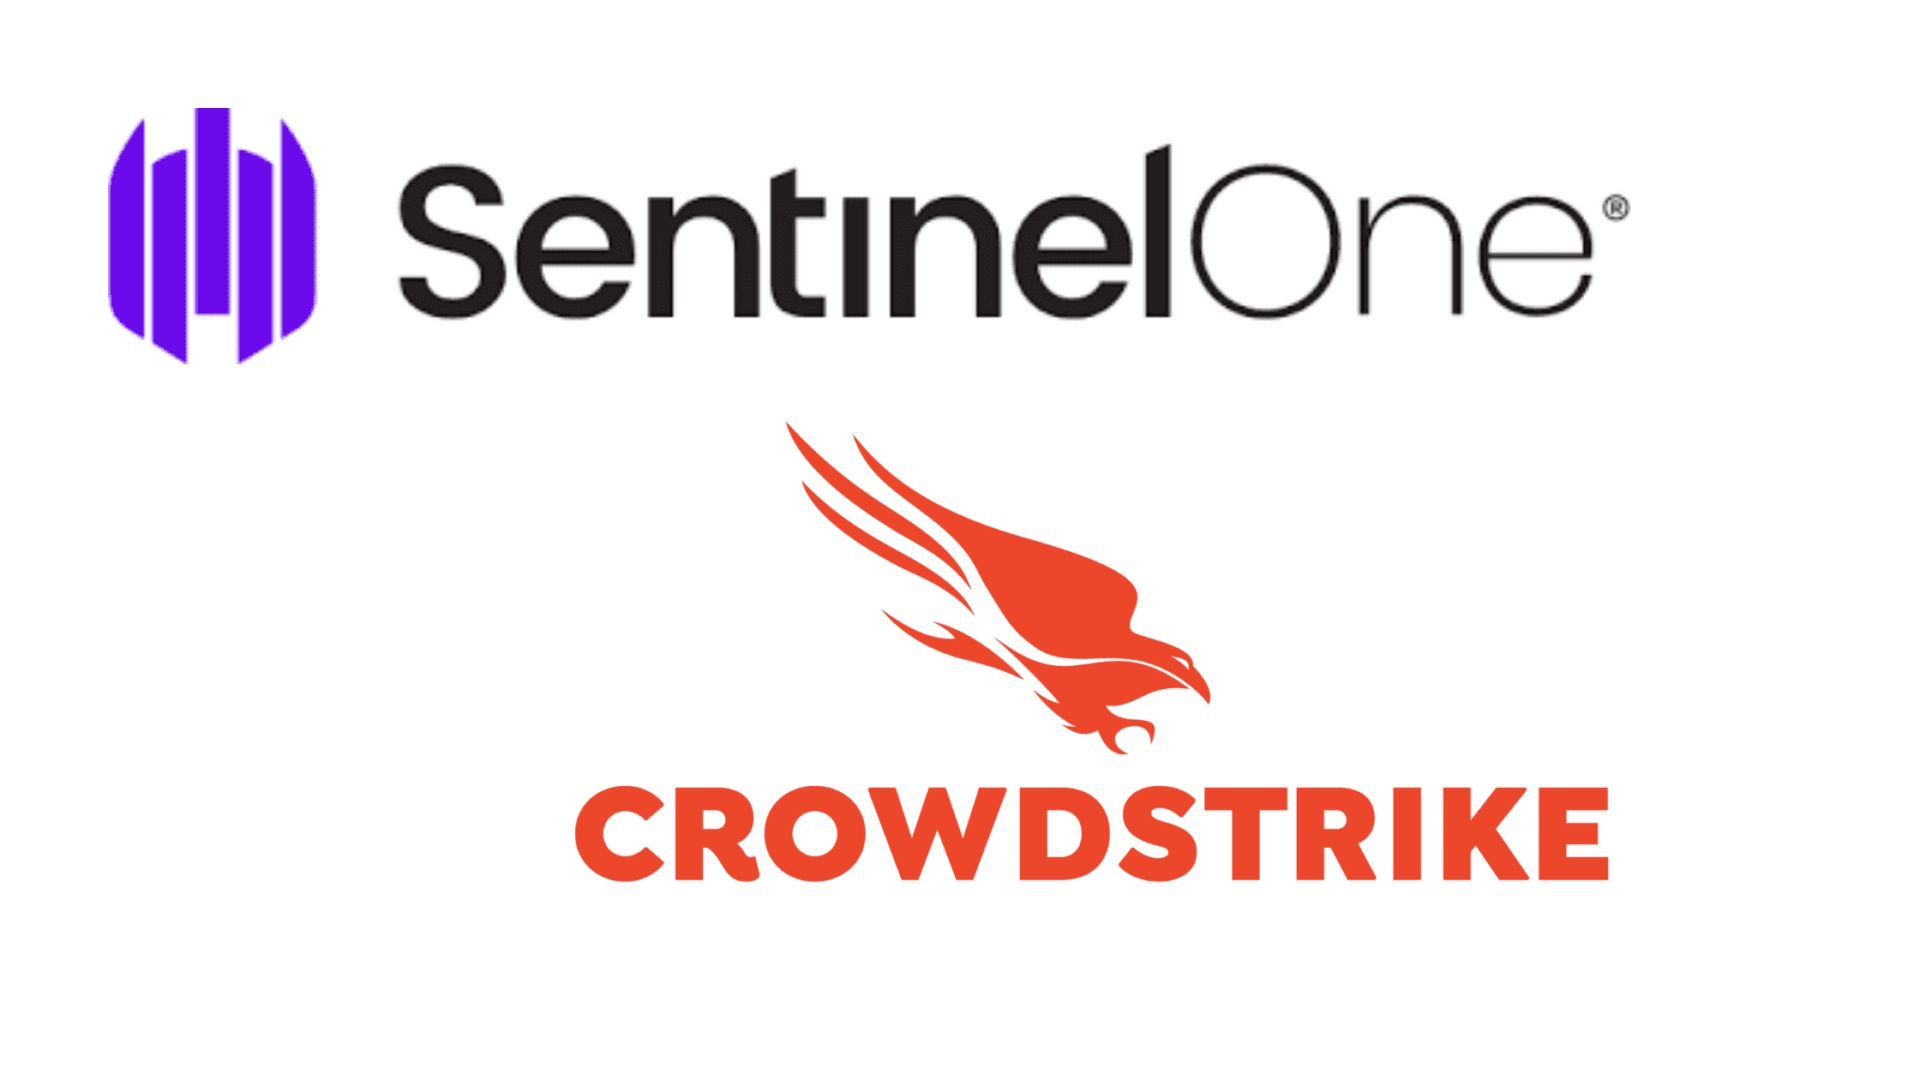 מה עדיף SentinelOne או CrowdStrike?